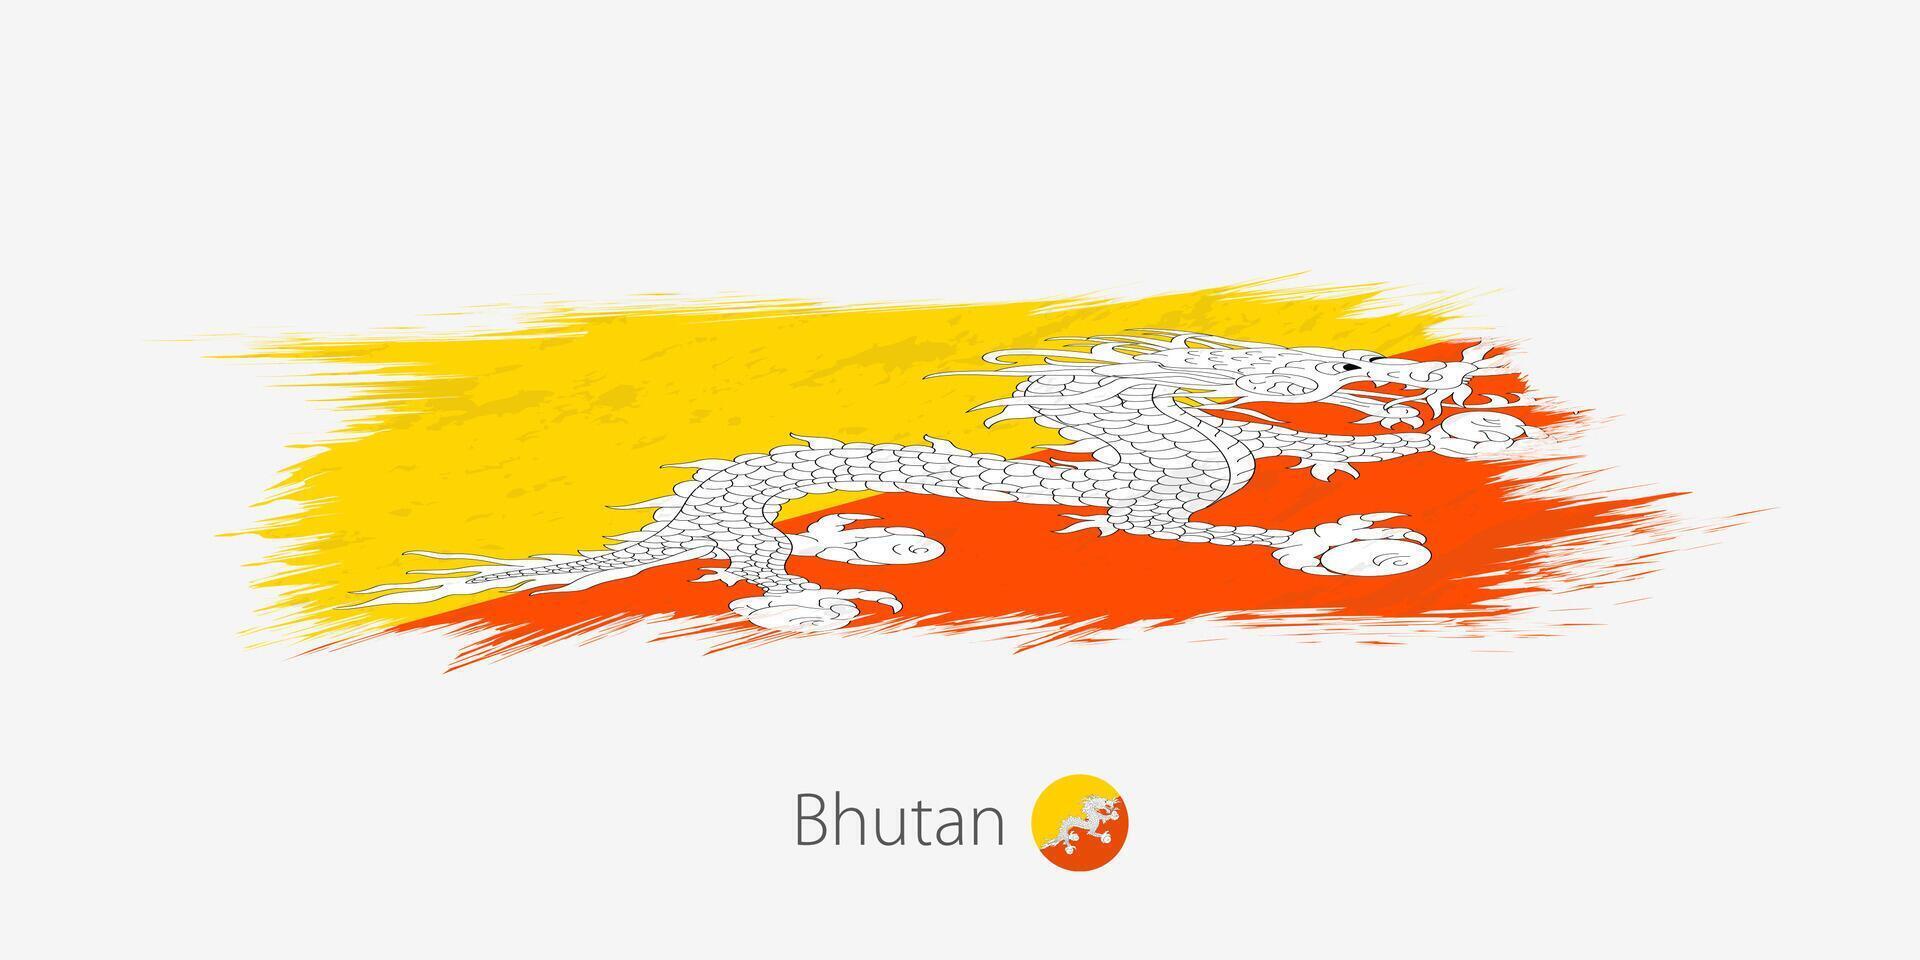 flagga av bhutan, grunge abstrakt borsta stroke på grå bakgrund. vektor